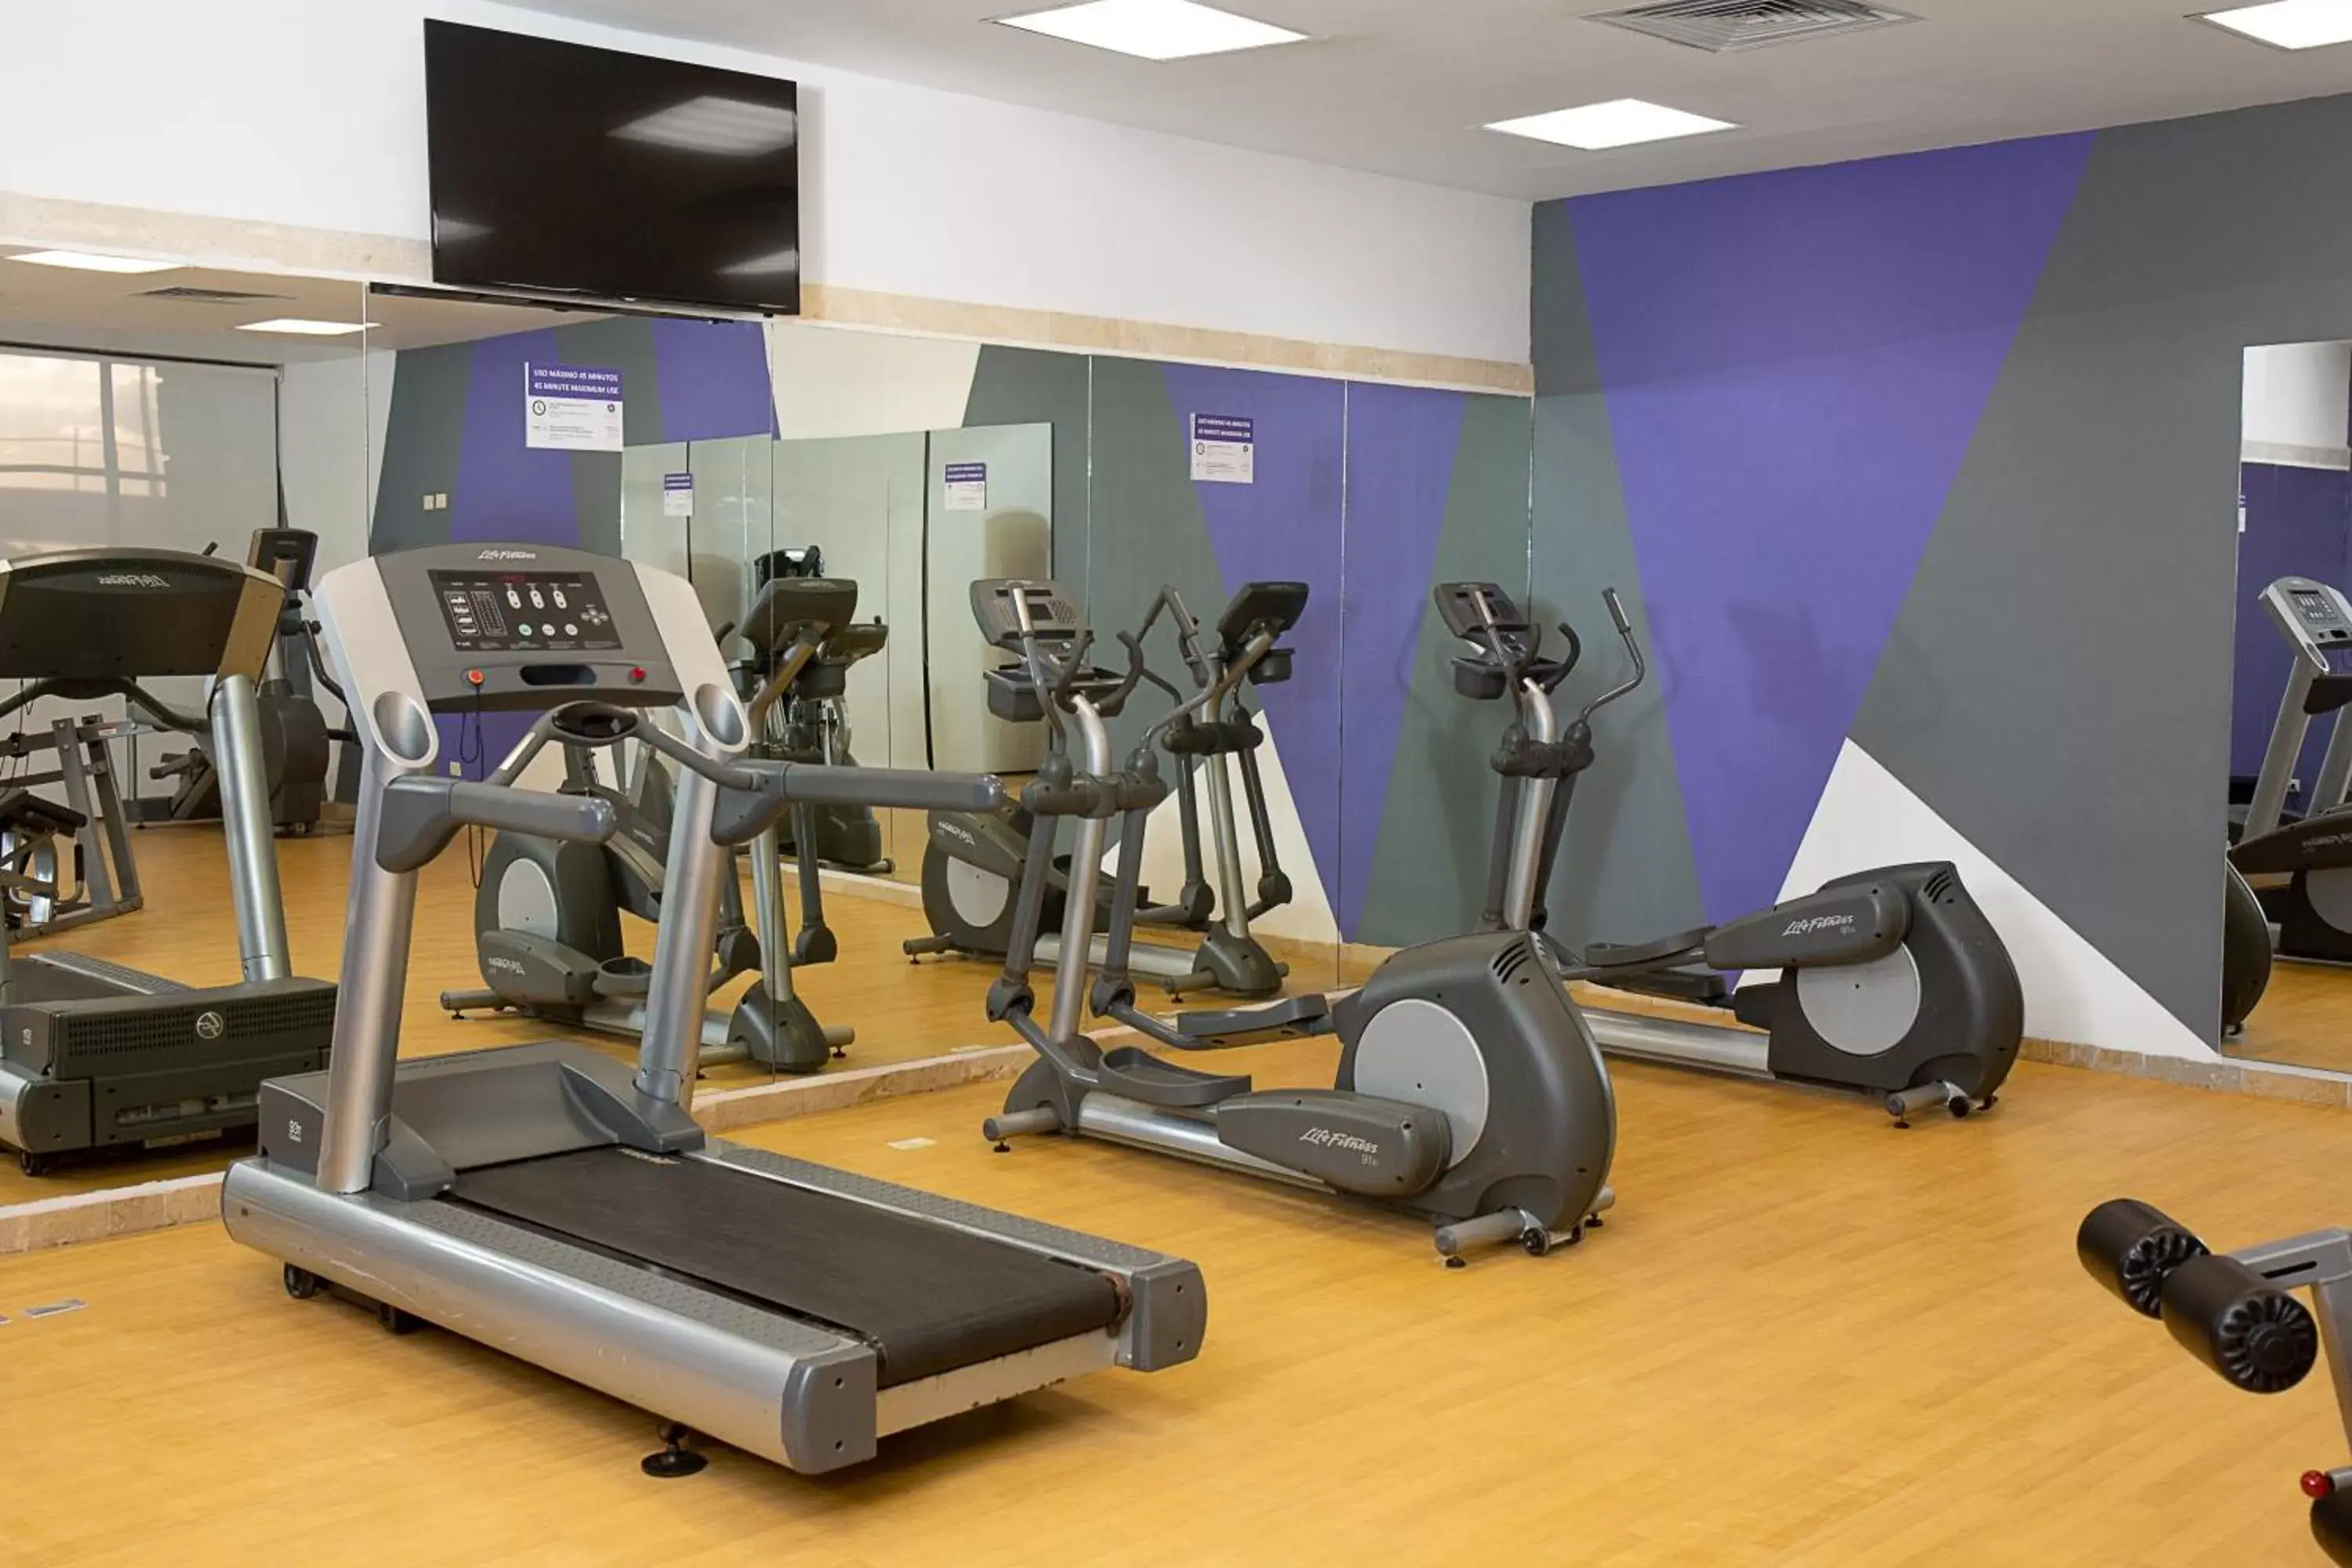 Fitness centre/facilities, Fitness Center/Facilities in Hyatt Regency Merida